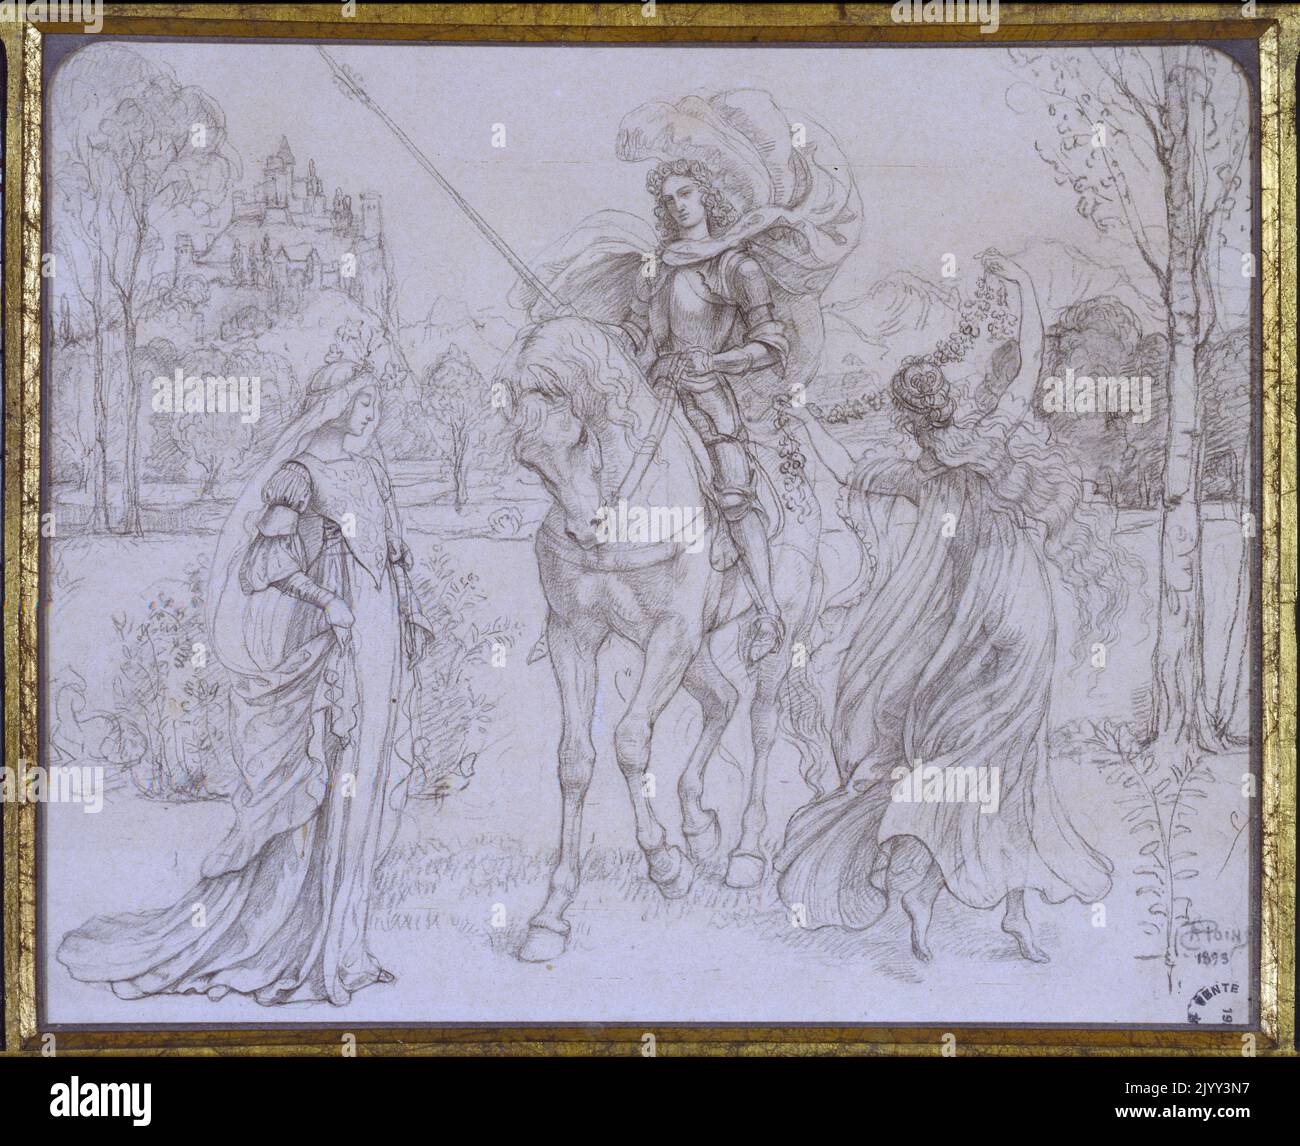 Scène du Moyen Age par Armand point (1860-1932). Dessin d'un chevalier parlant avec deux femmes Banque D'Images